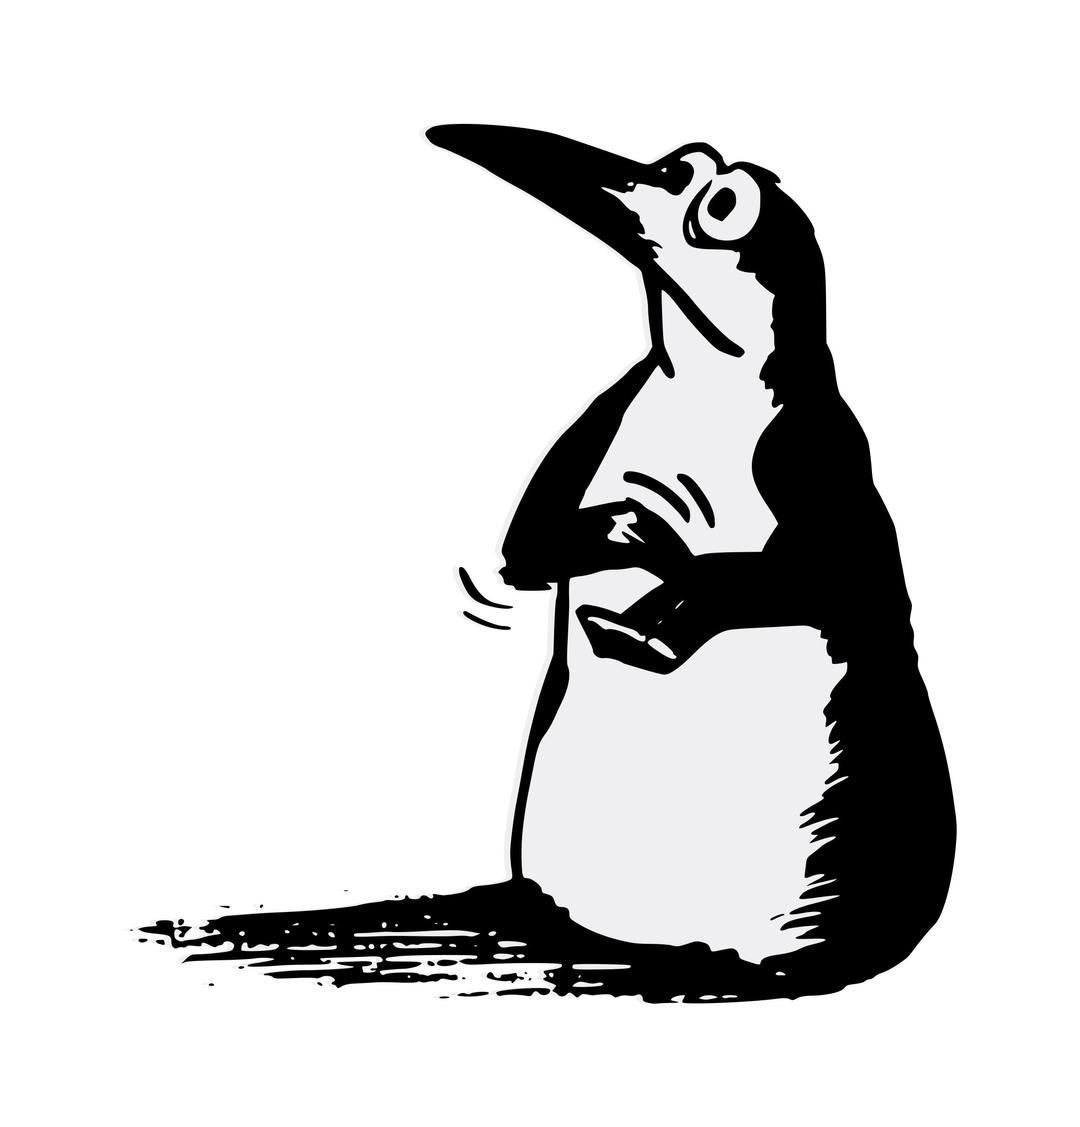 Pingouin Applaudissant - Applauding Penguin png transparent